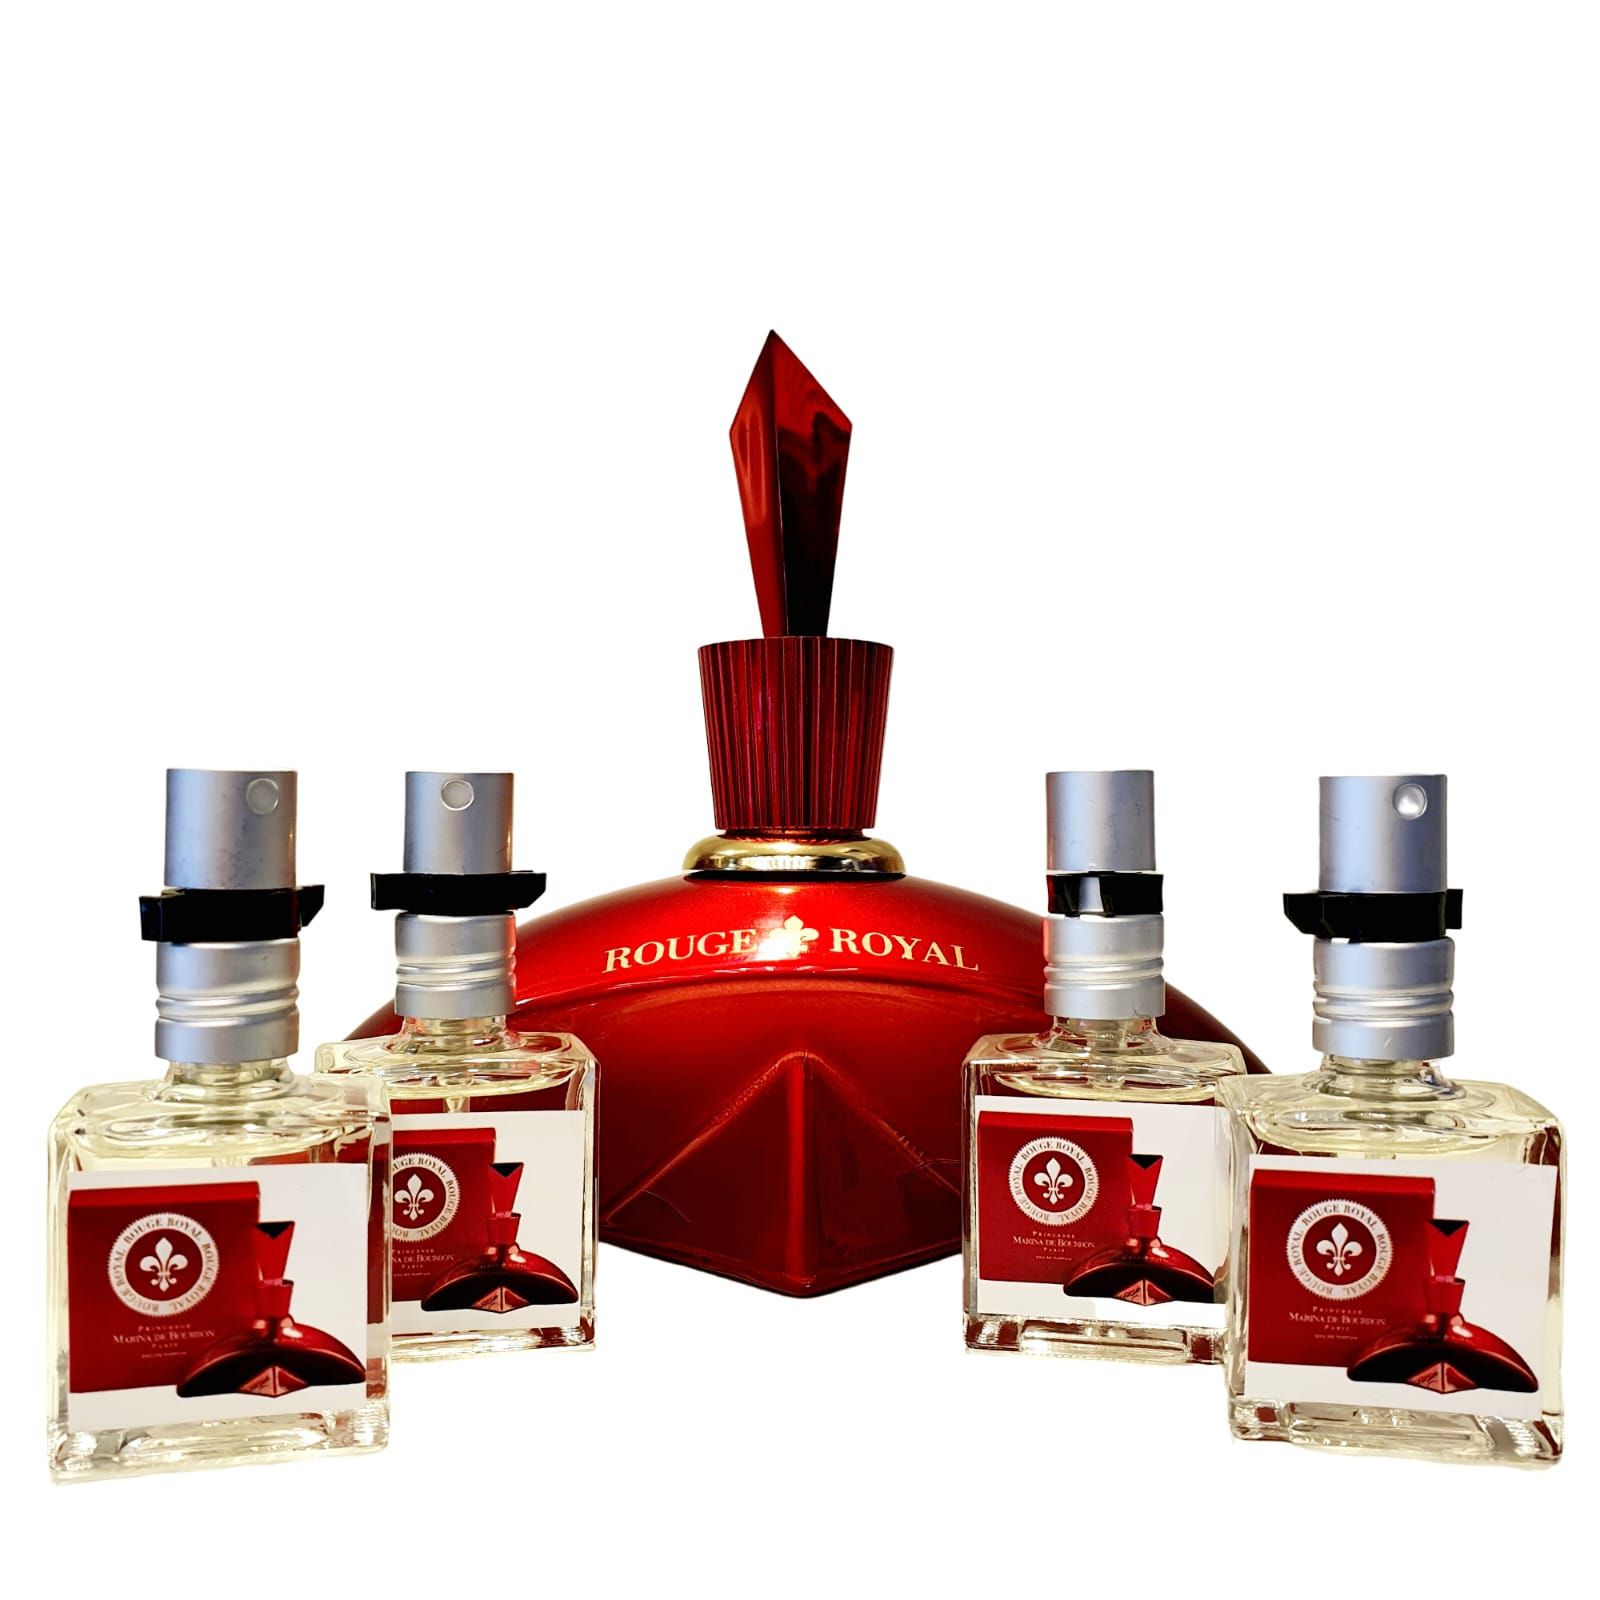 Rouge Royal Marina de Bourbon - Perfume vc Feminino Decant 9ml Original -  Kaory Perfumaria - Perfumes Originais & Decants